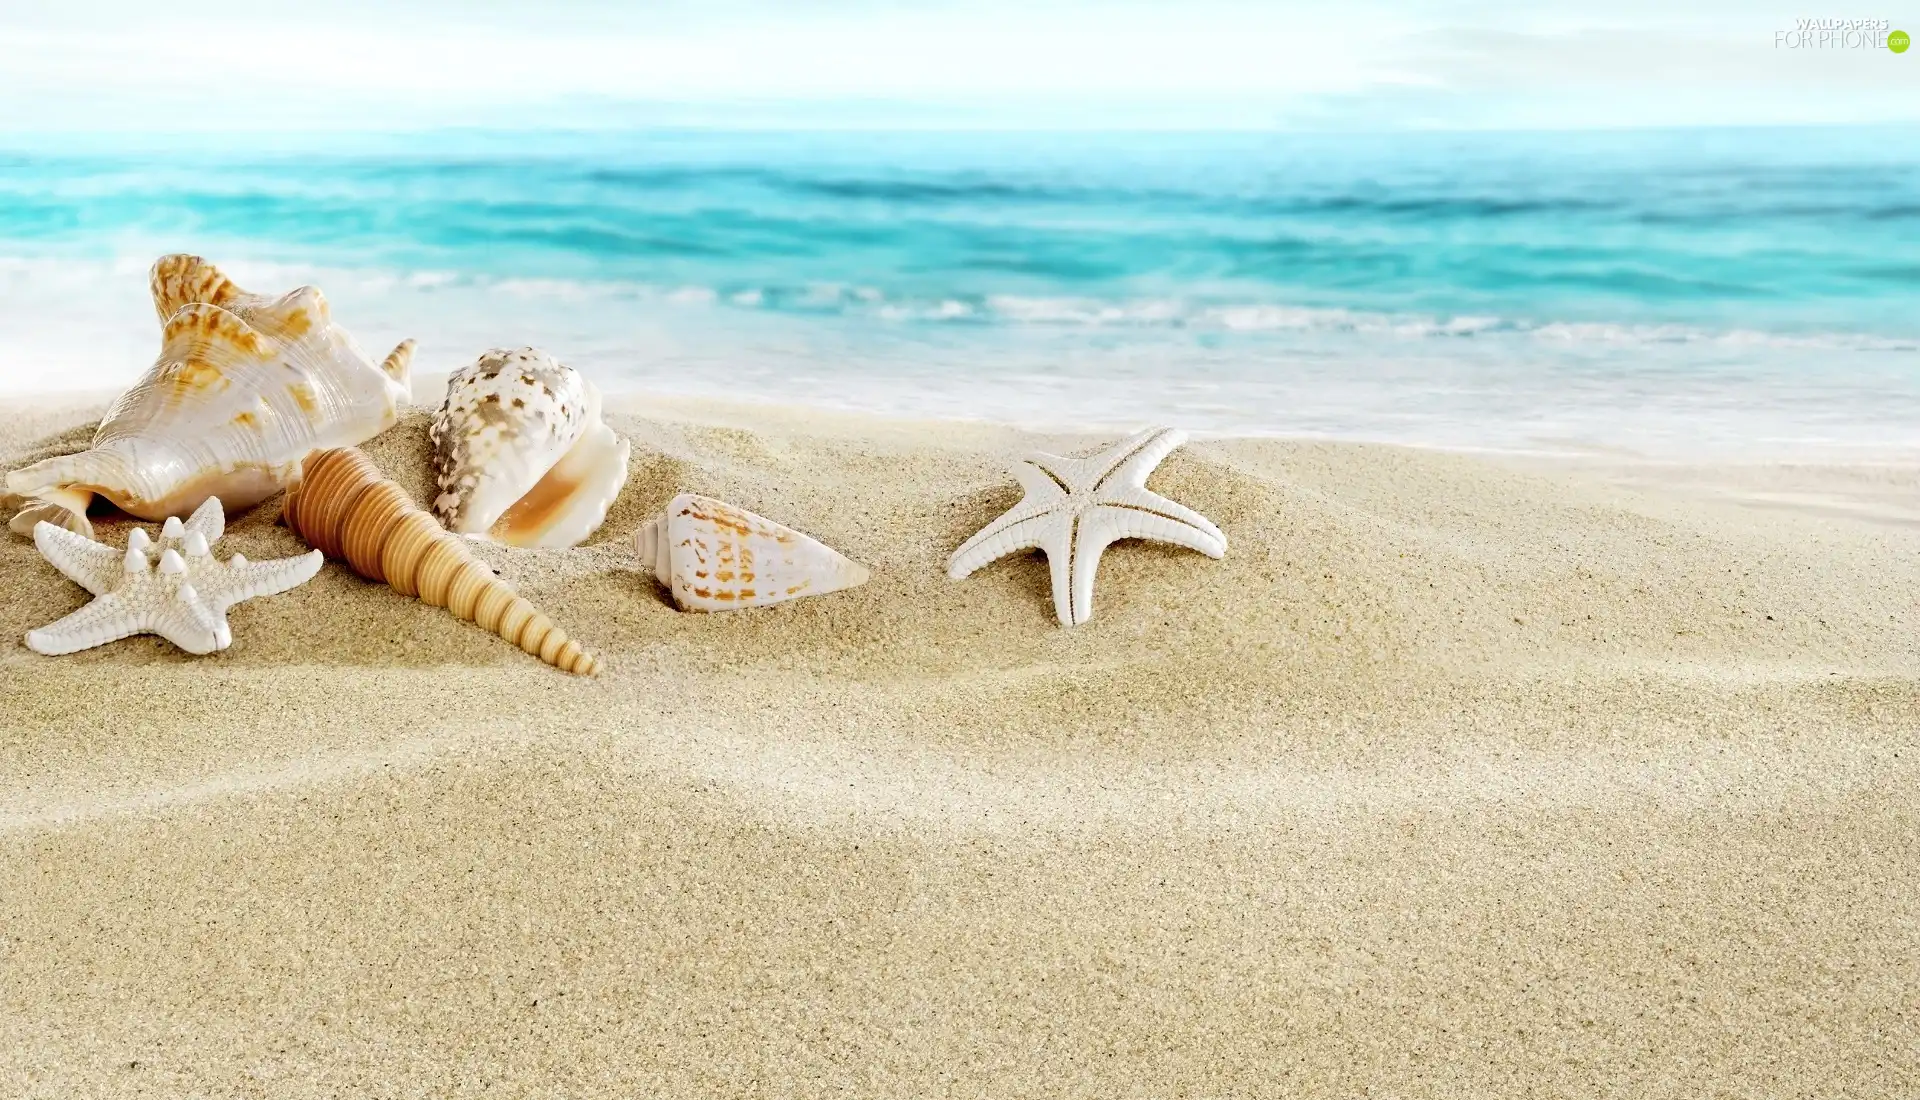 Shells, Sand, sea, starfish